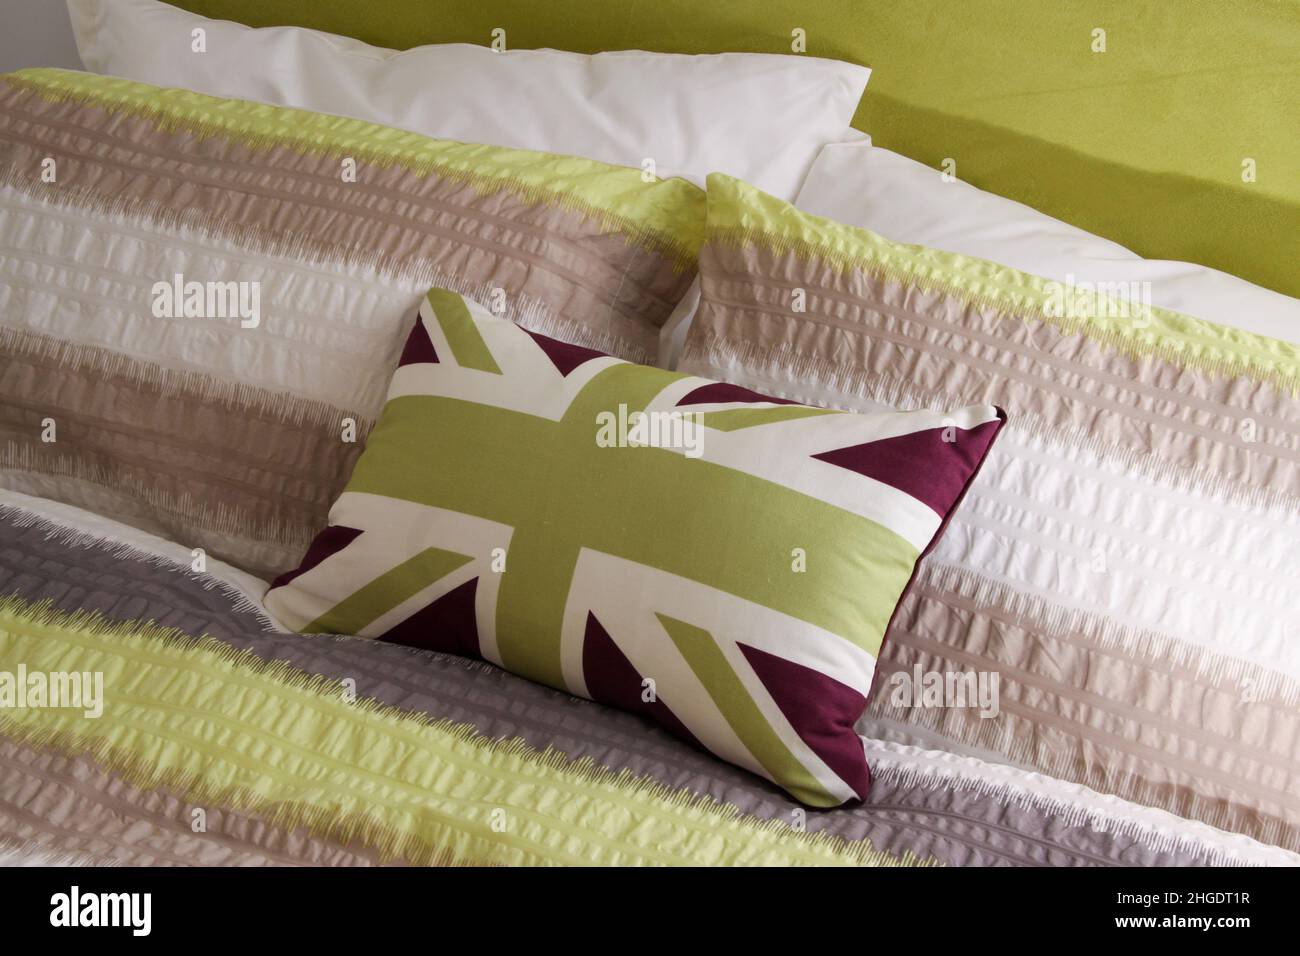 Cojín sobre una cama en estilo bandera de la bandera de la unión, en colores verde y blanco. Foto de stock